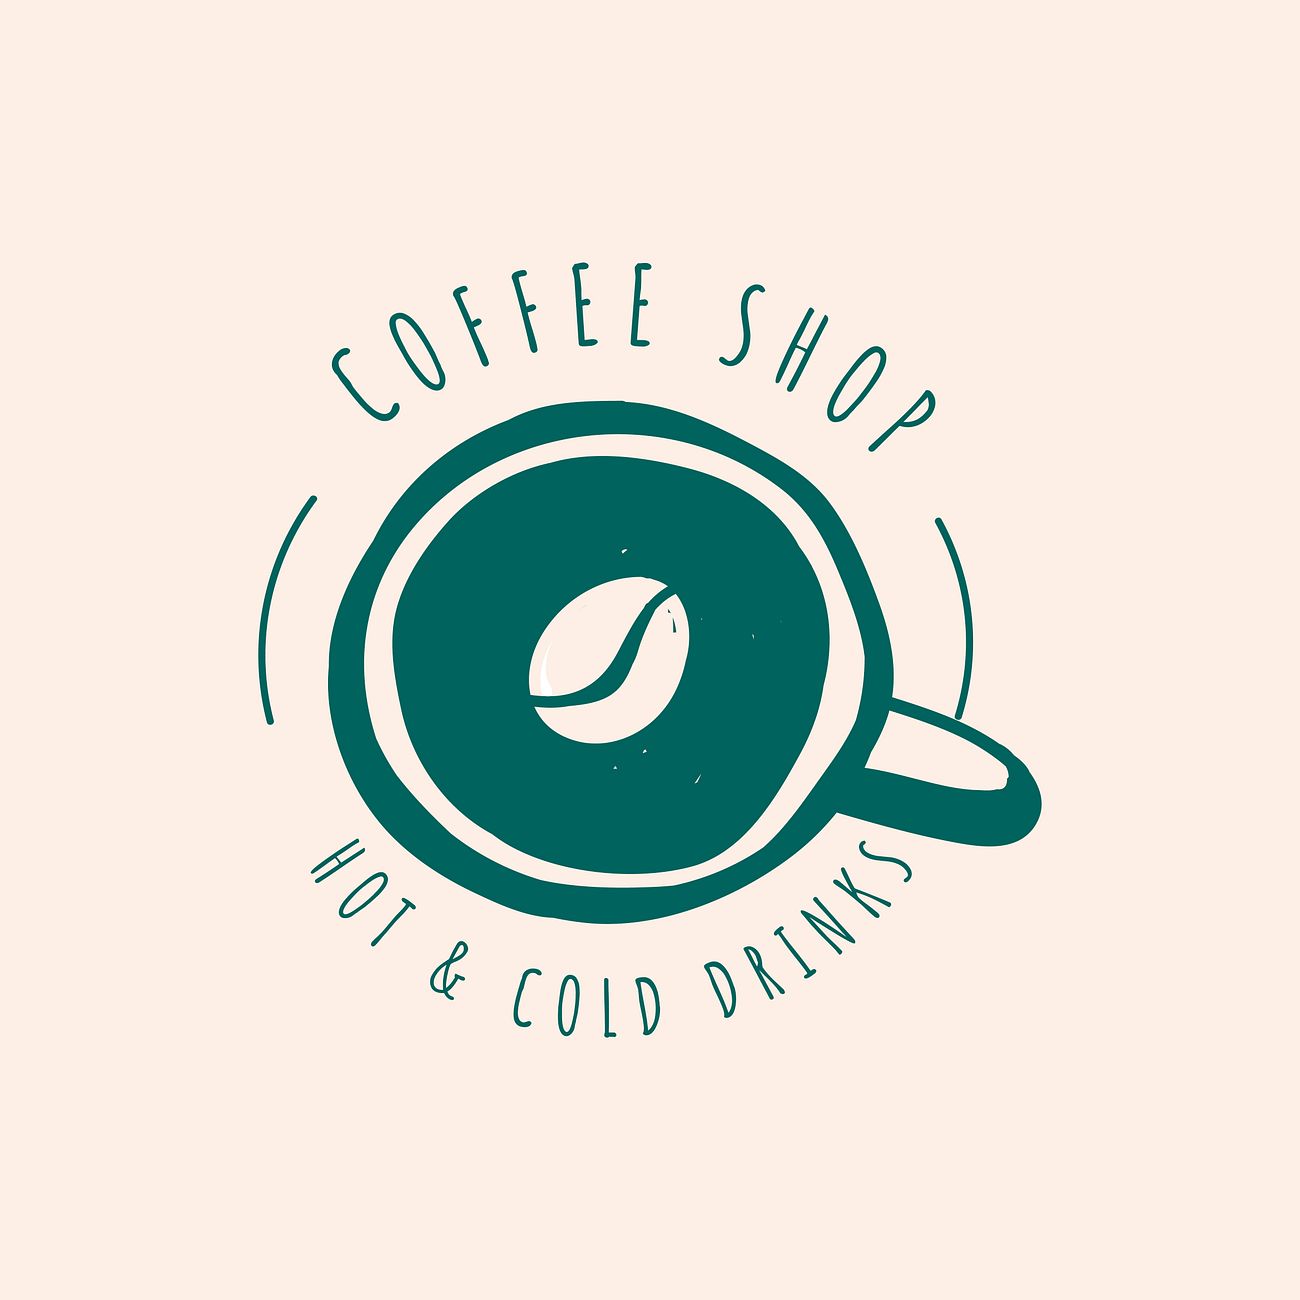 Download Coffee shop cafe logo vector | Free vector - 520734